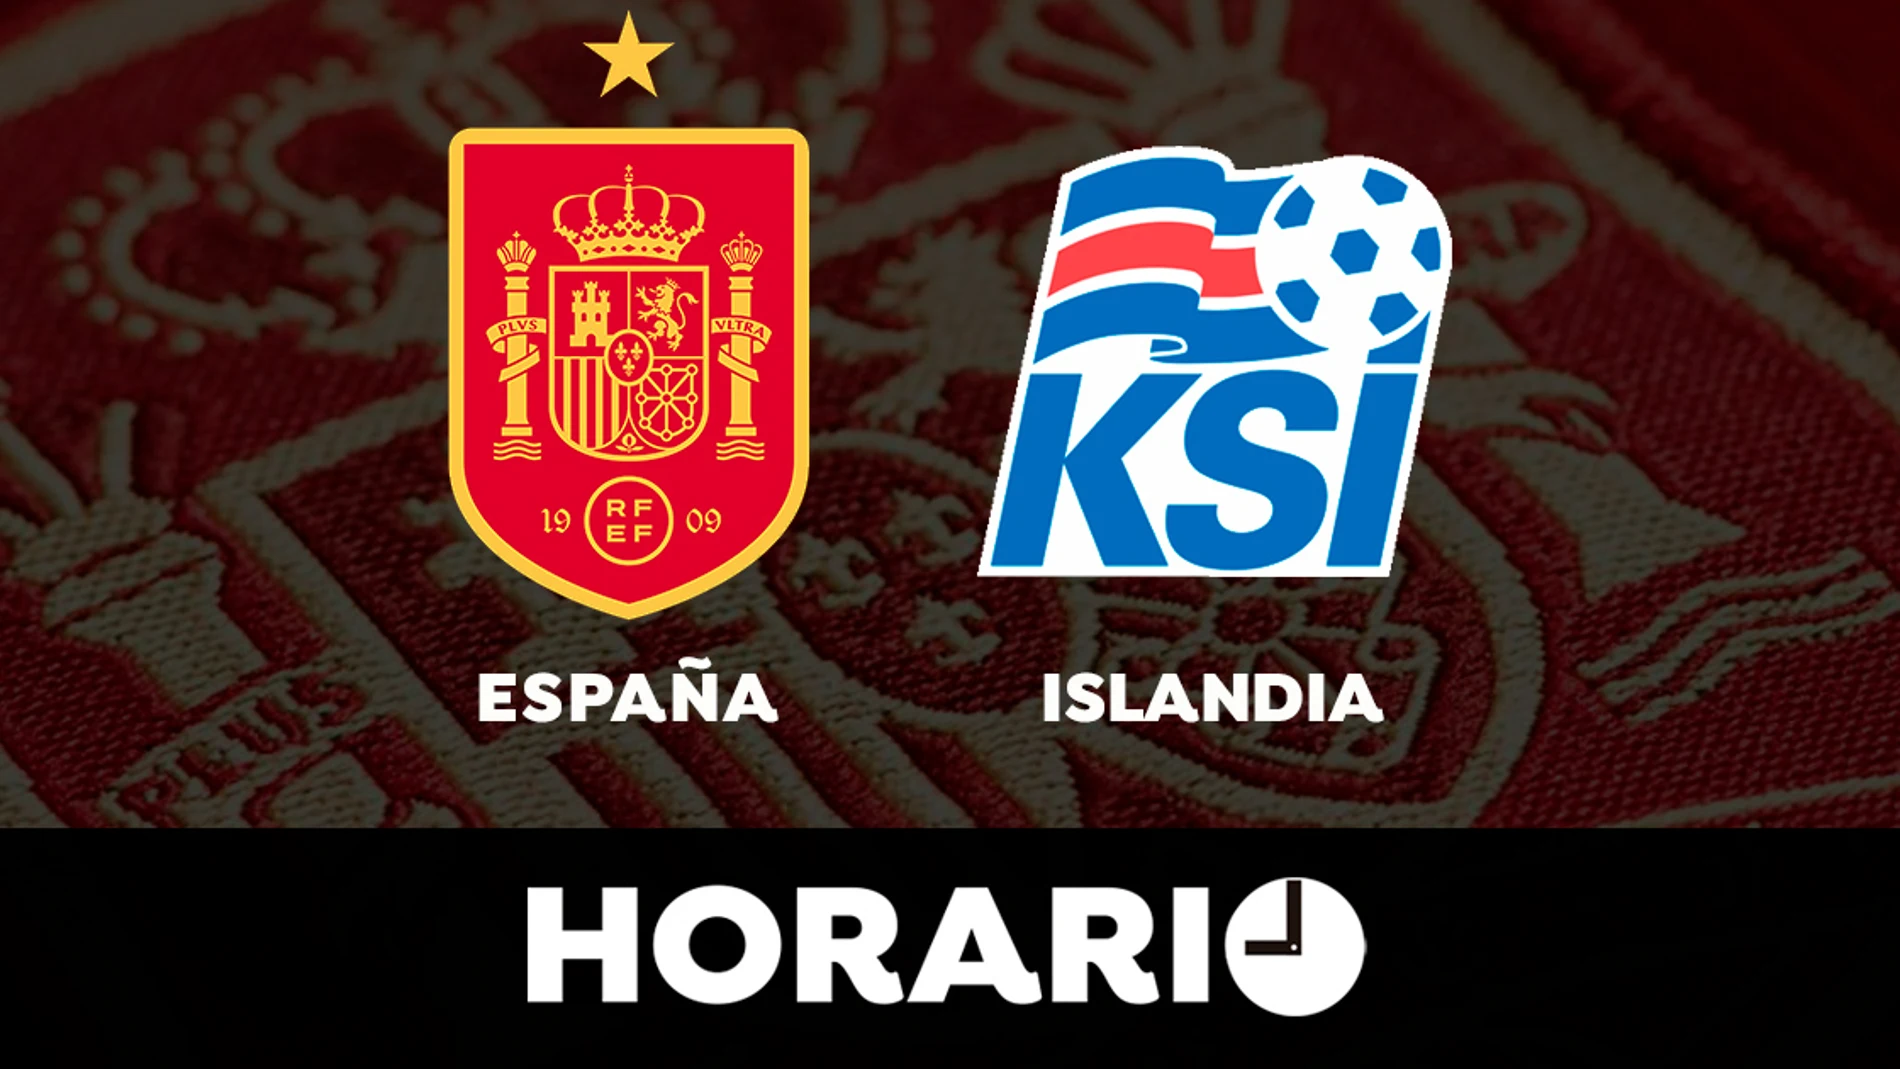 - Islandia: Horario y dónde ver el partido de la selección española en directo